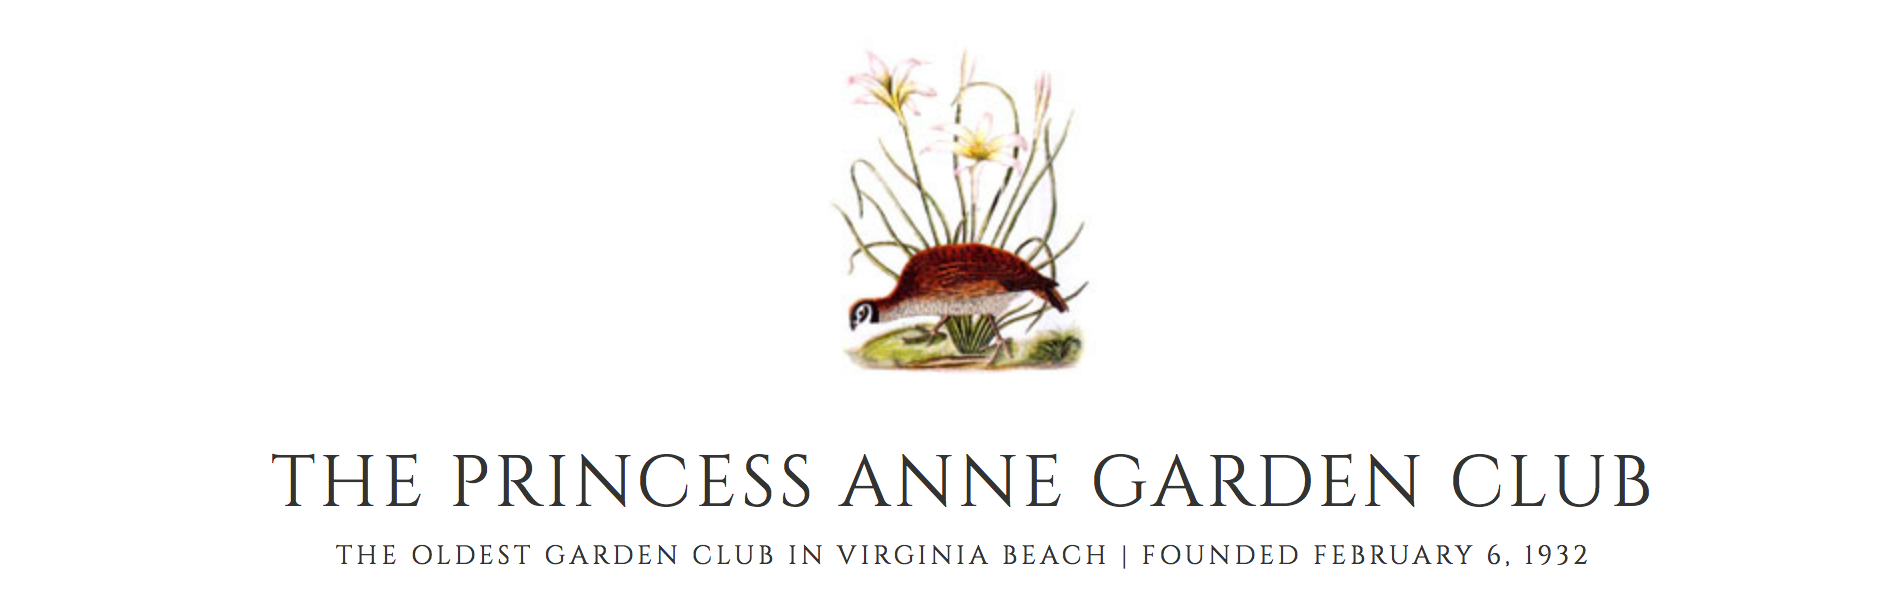 The Princess Anne Garden Club